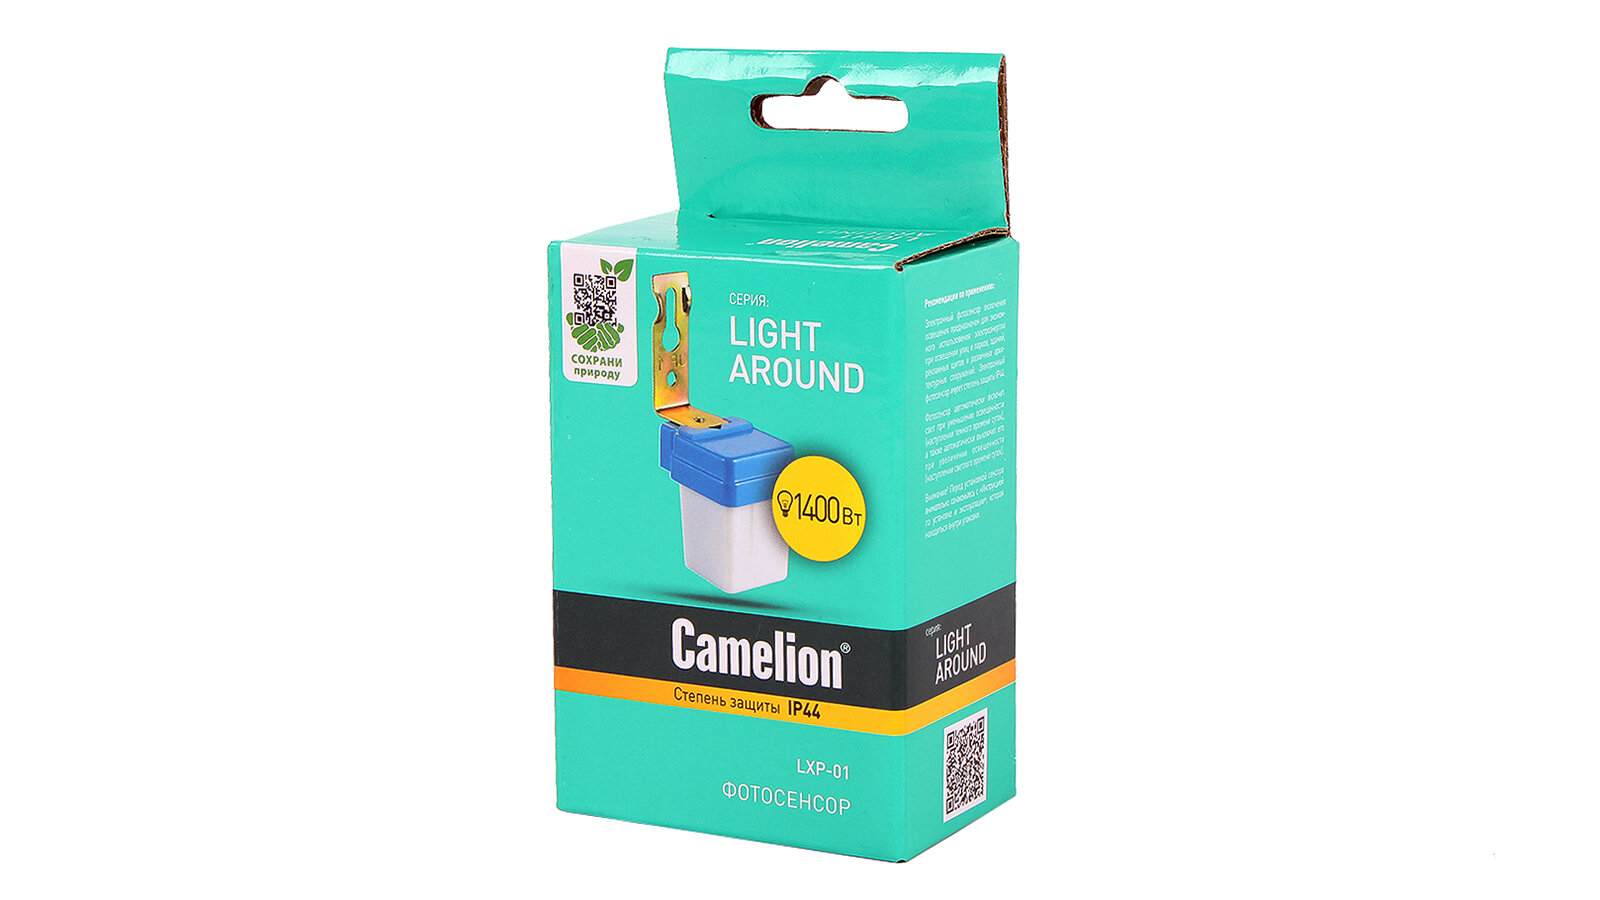 Электронный фотосенсор включения освещения Camelion - фото №3